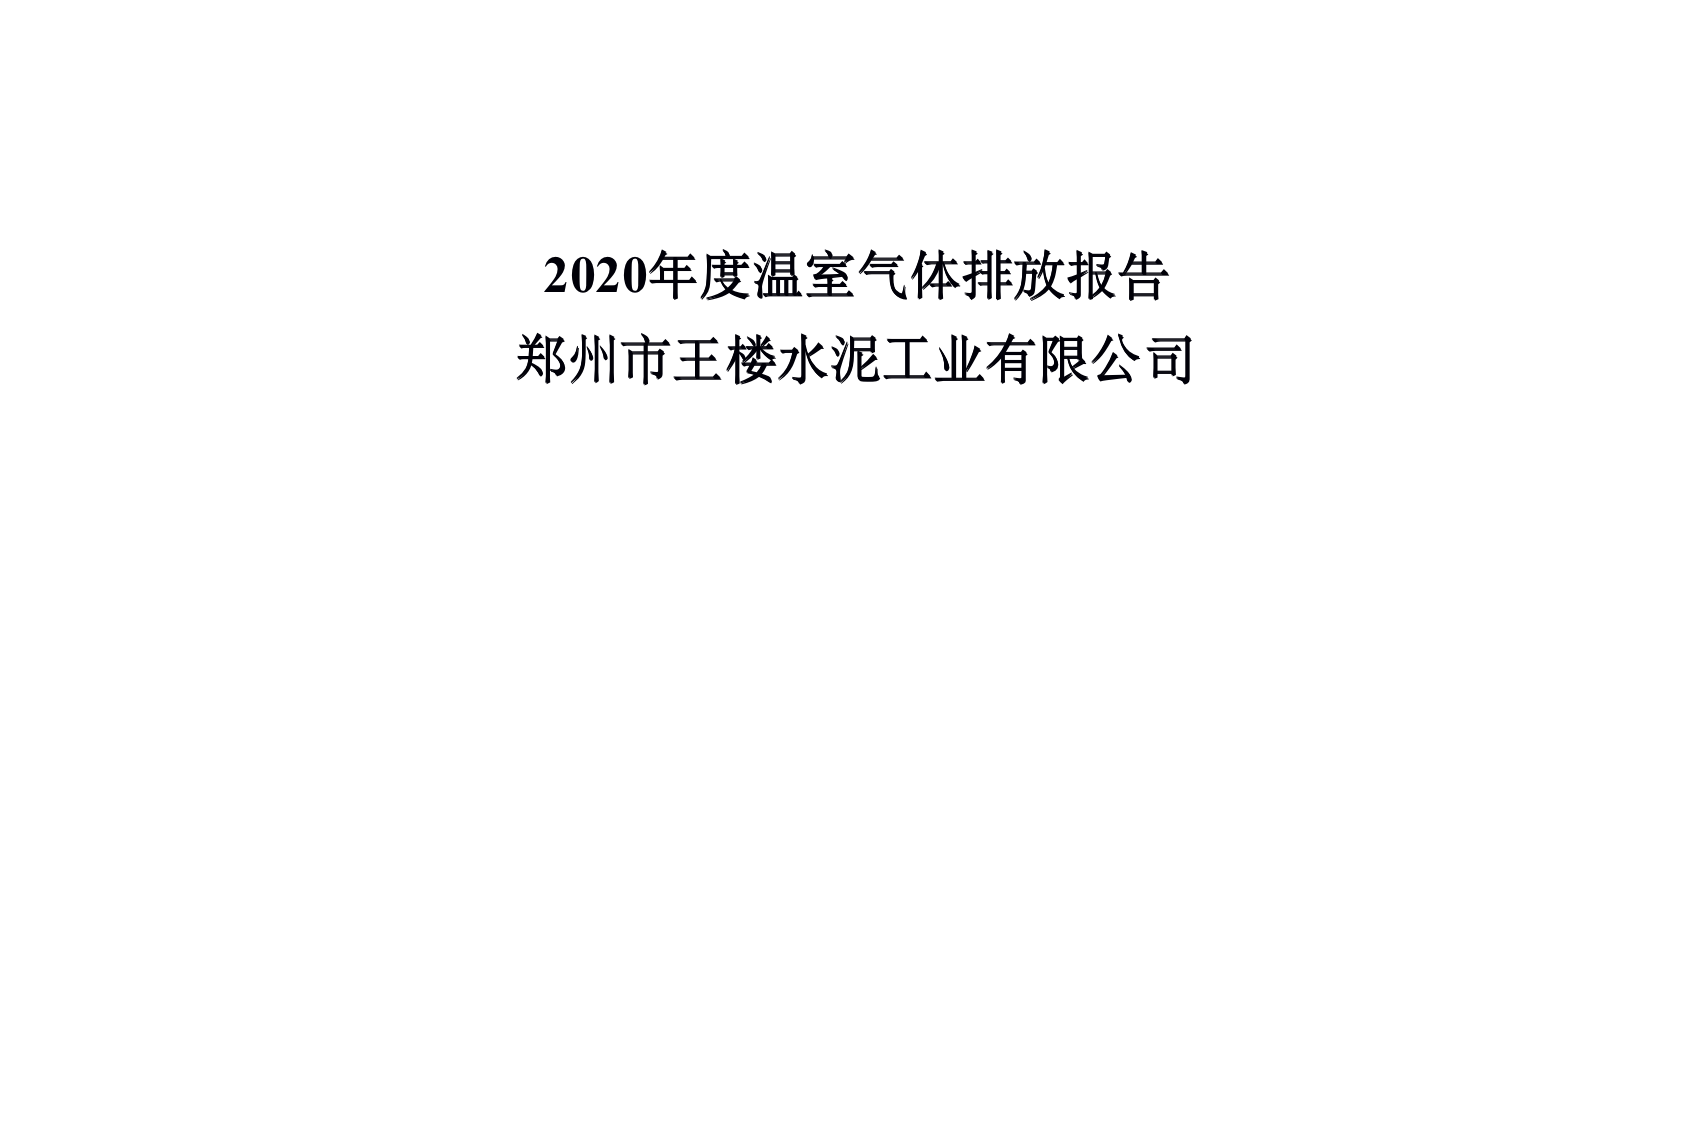 2020年度温室气体排放报告 郑州市王楼水泥工业有限公司